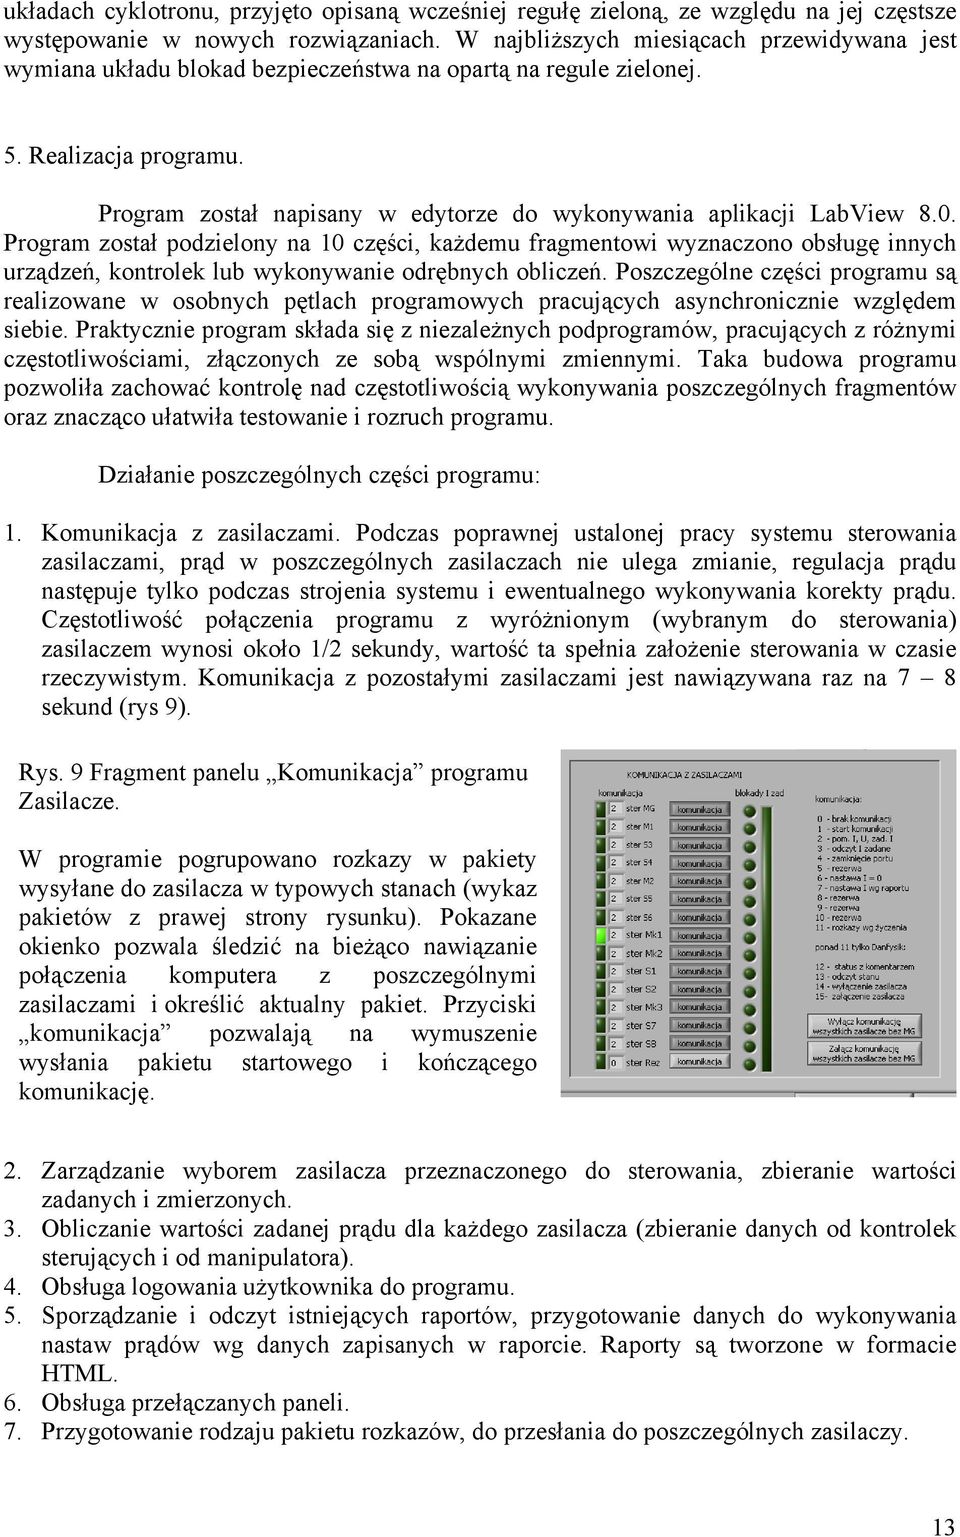 Program został napisany w edytorze do wykonywania aplikacji LabView 8.0.